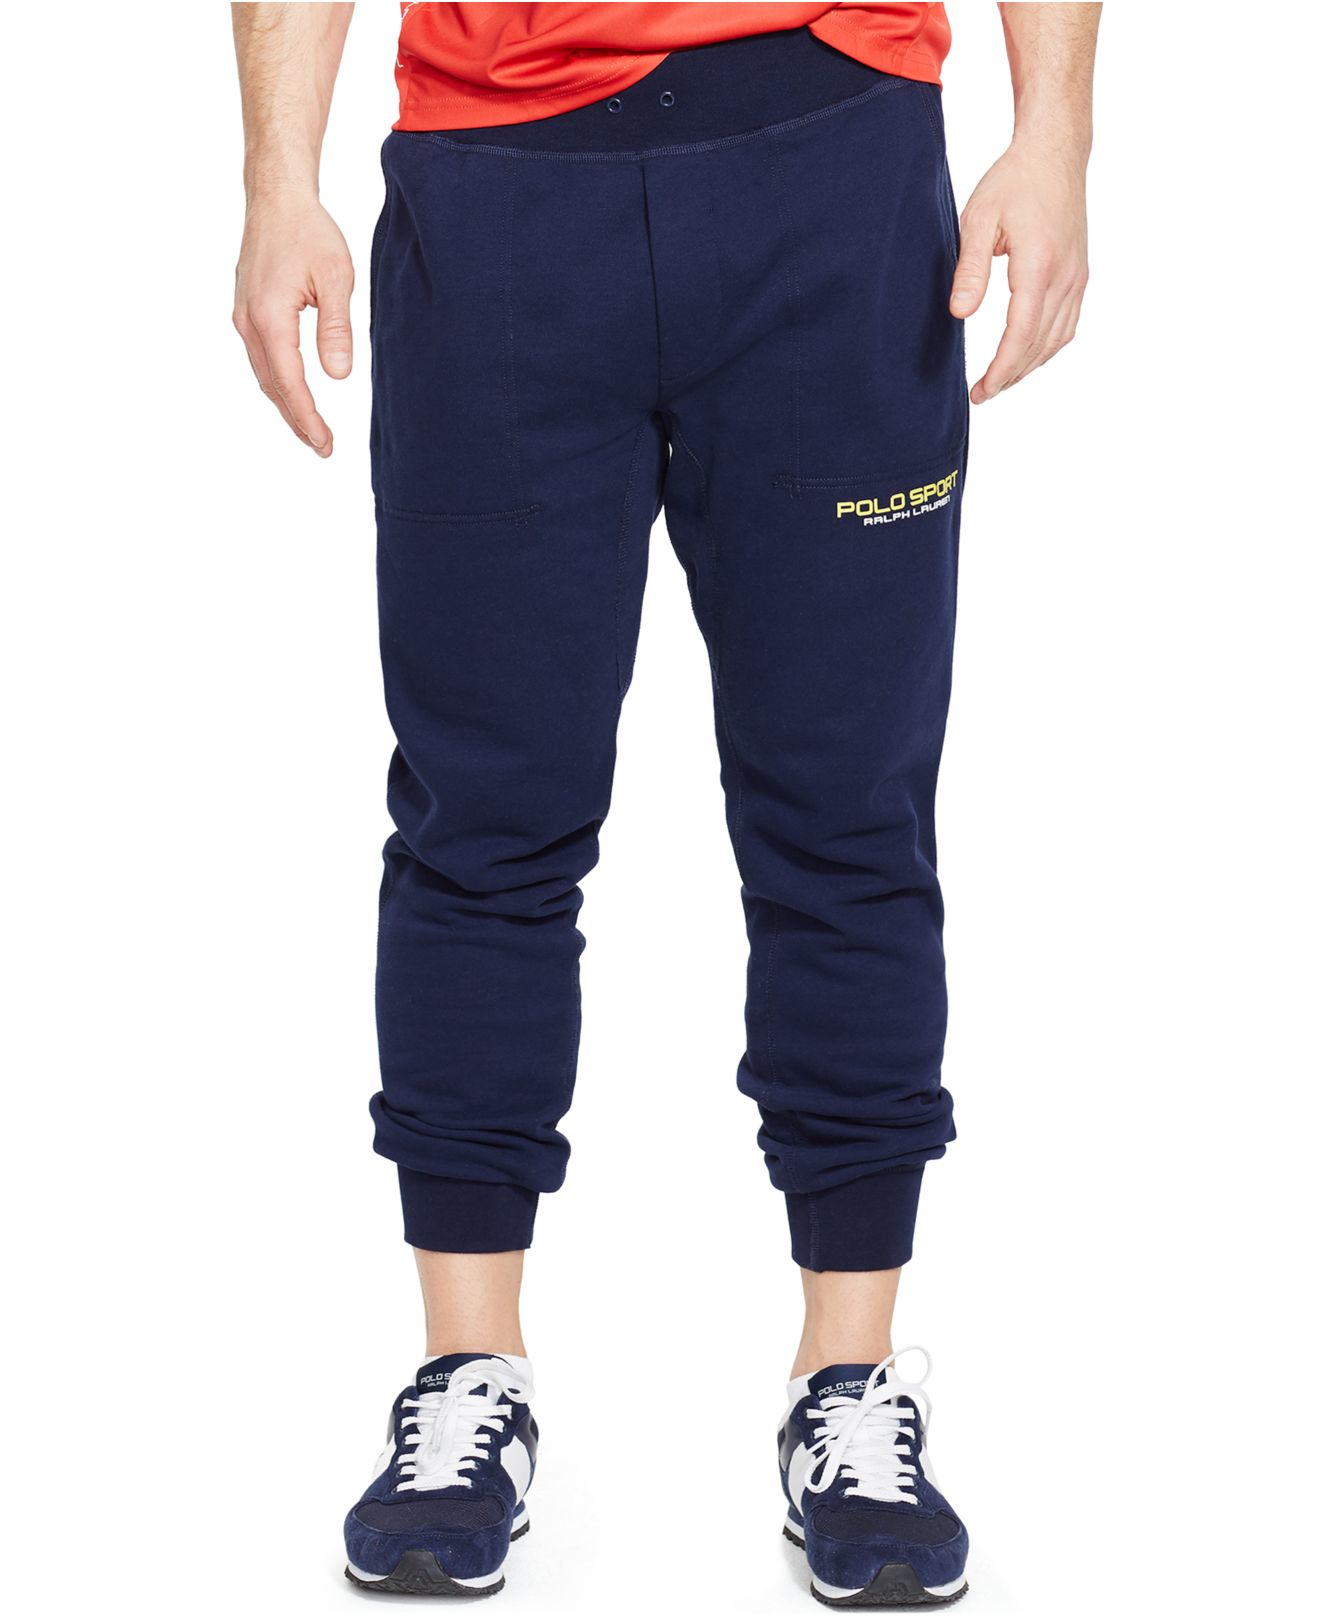 Lyst - Polo Ralph Lauren Polo Sport Fleece Pants in Blue for Men